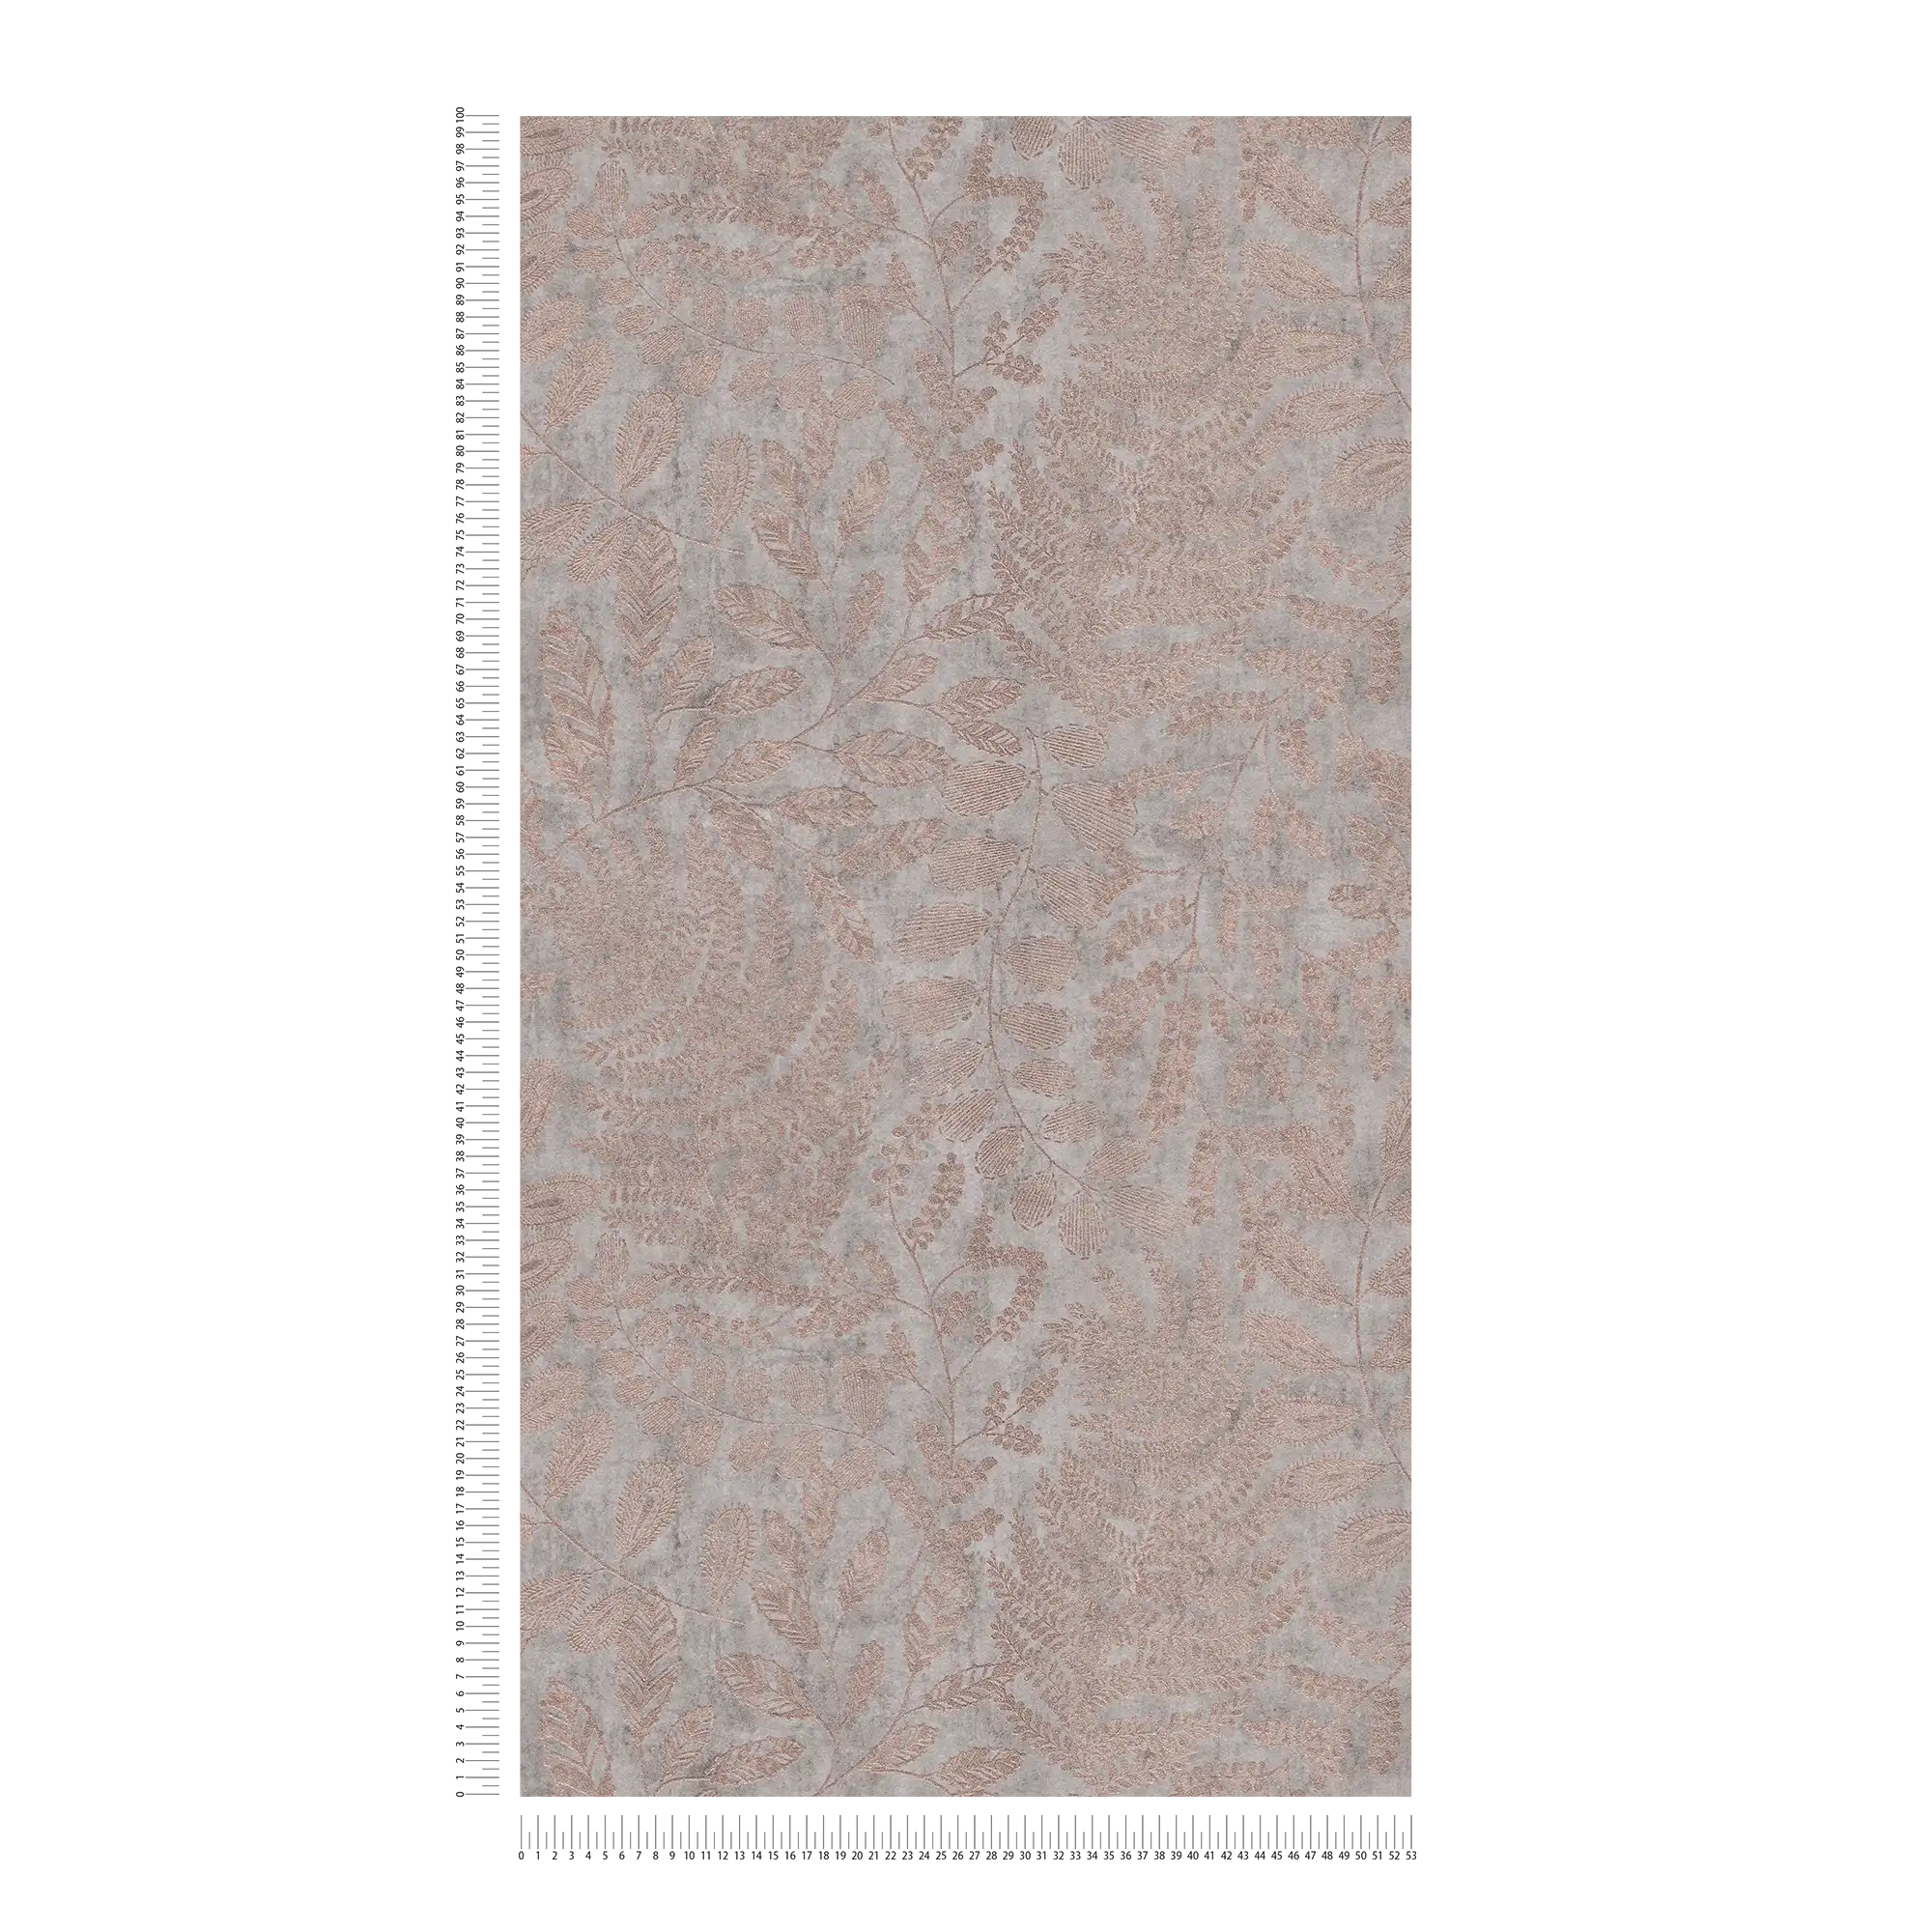             Carta da parati metallizzata con motivo a foglie in stile Skandi - grigio, metallizzato
        